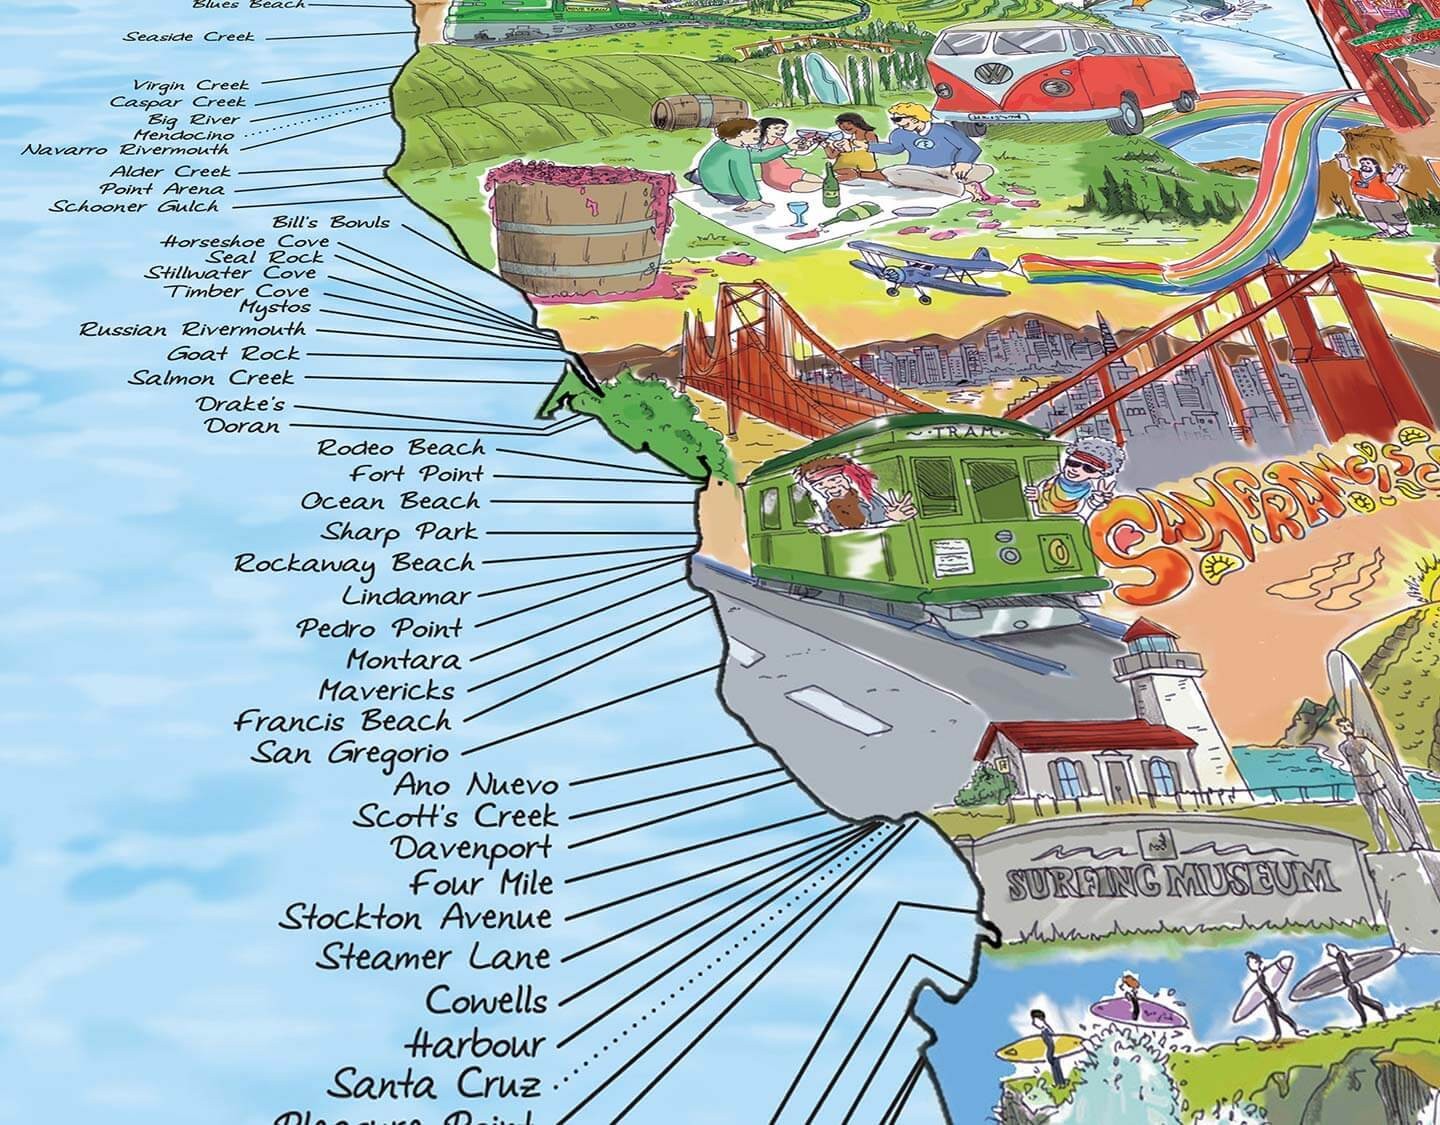 Mapas impresionantes - Póster Mapa de zonas de surf de la costa oeste de EE. UU.